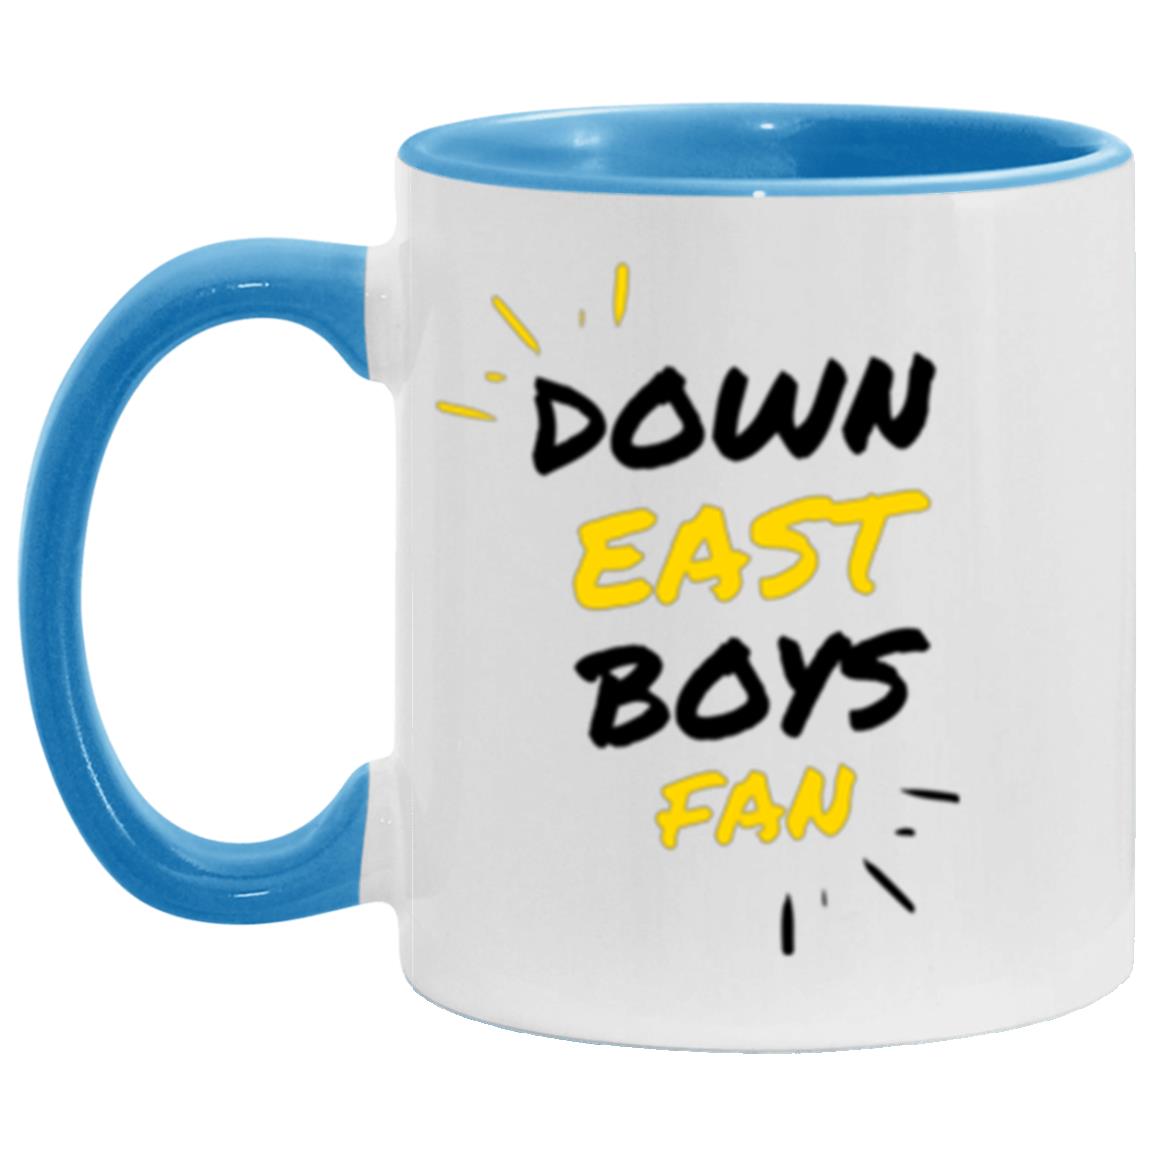 Down East Boys Fan Coffee Mug